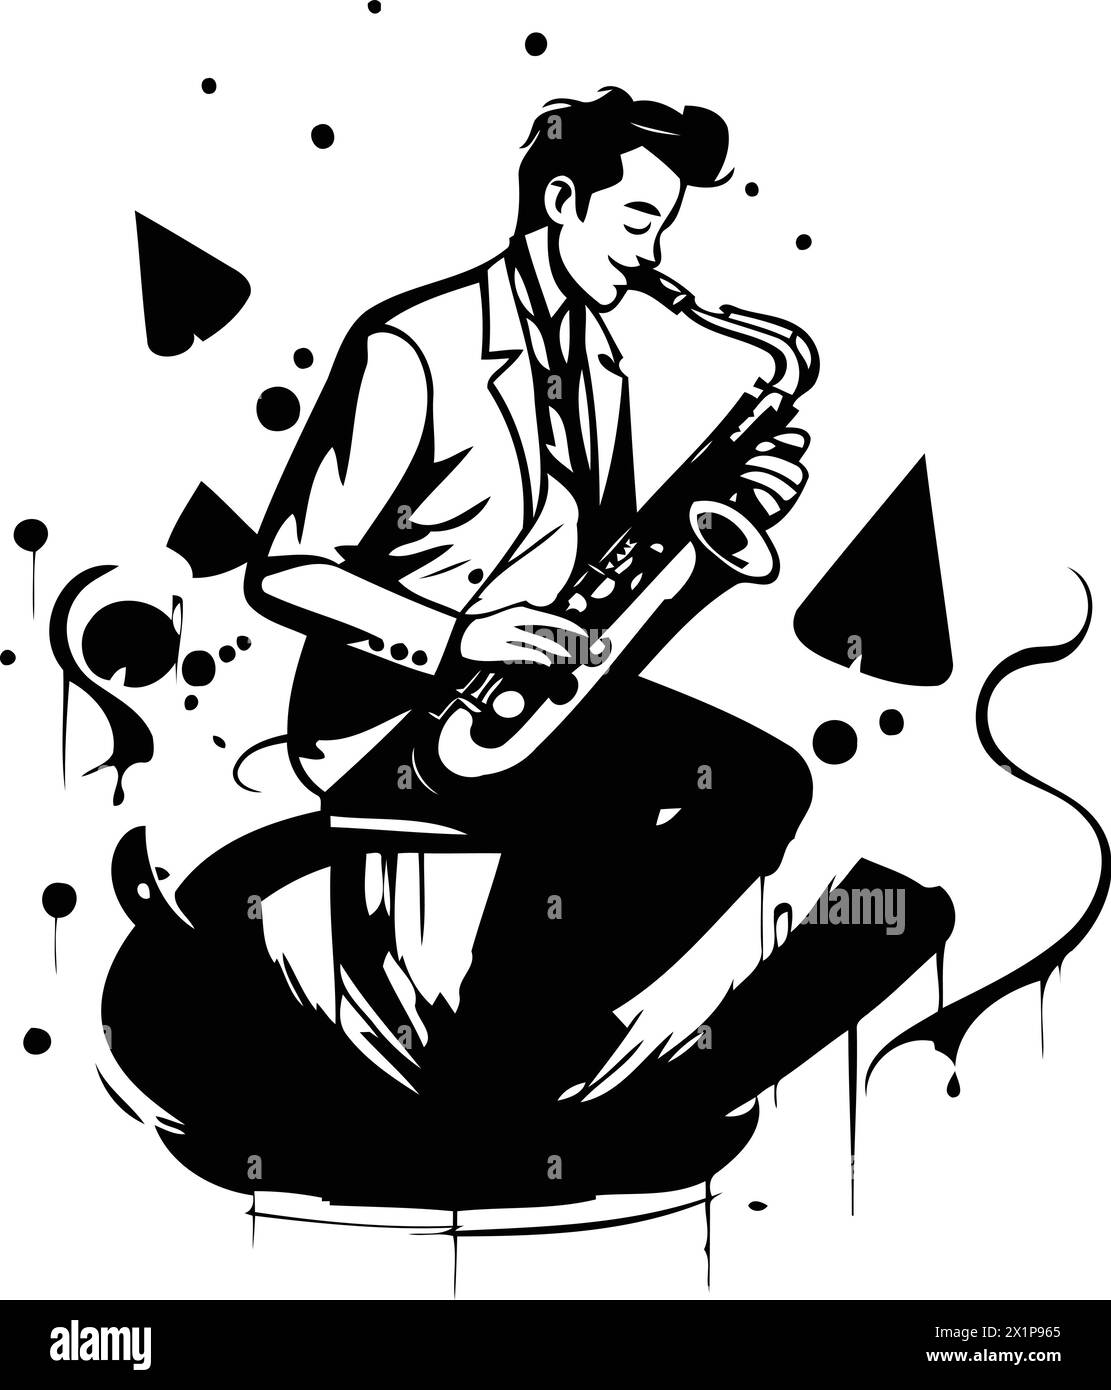 Musicien de jazz jouant du saxophone. Illustration vectorielle dessinée à la main. Illustration de Vecteur